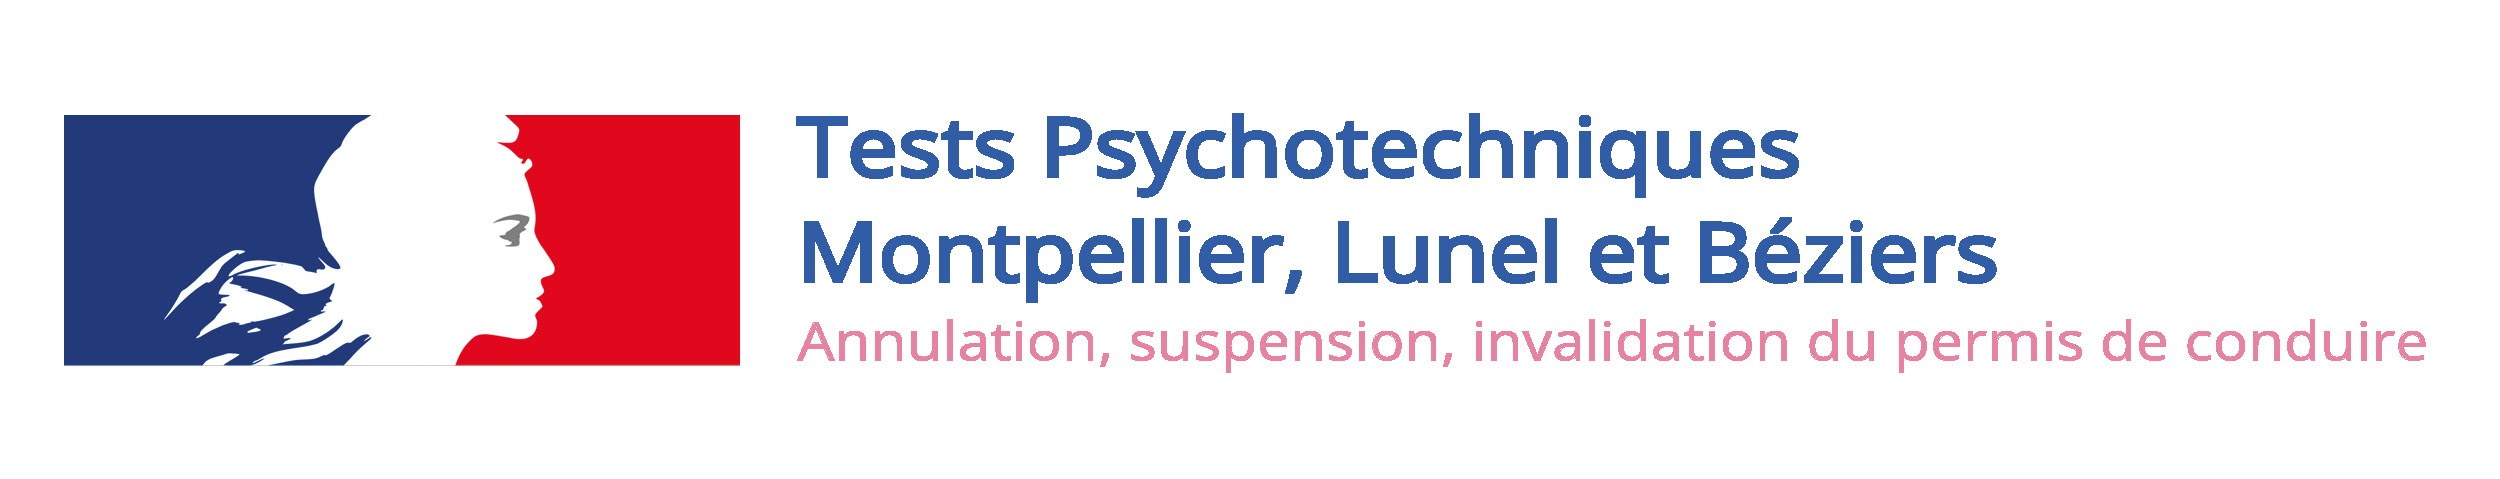 Tests psychotechniques Lunel Montpellier Béziers